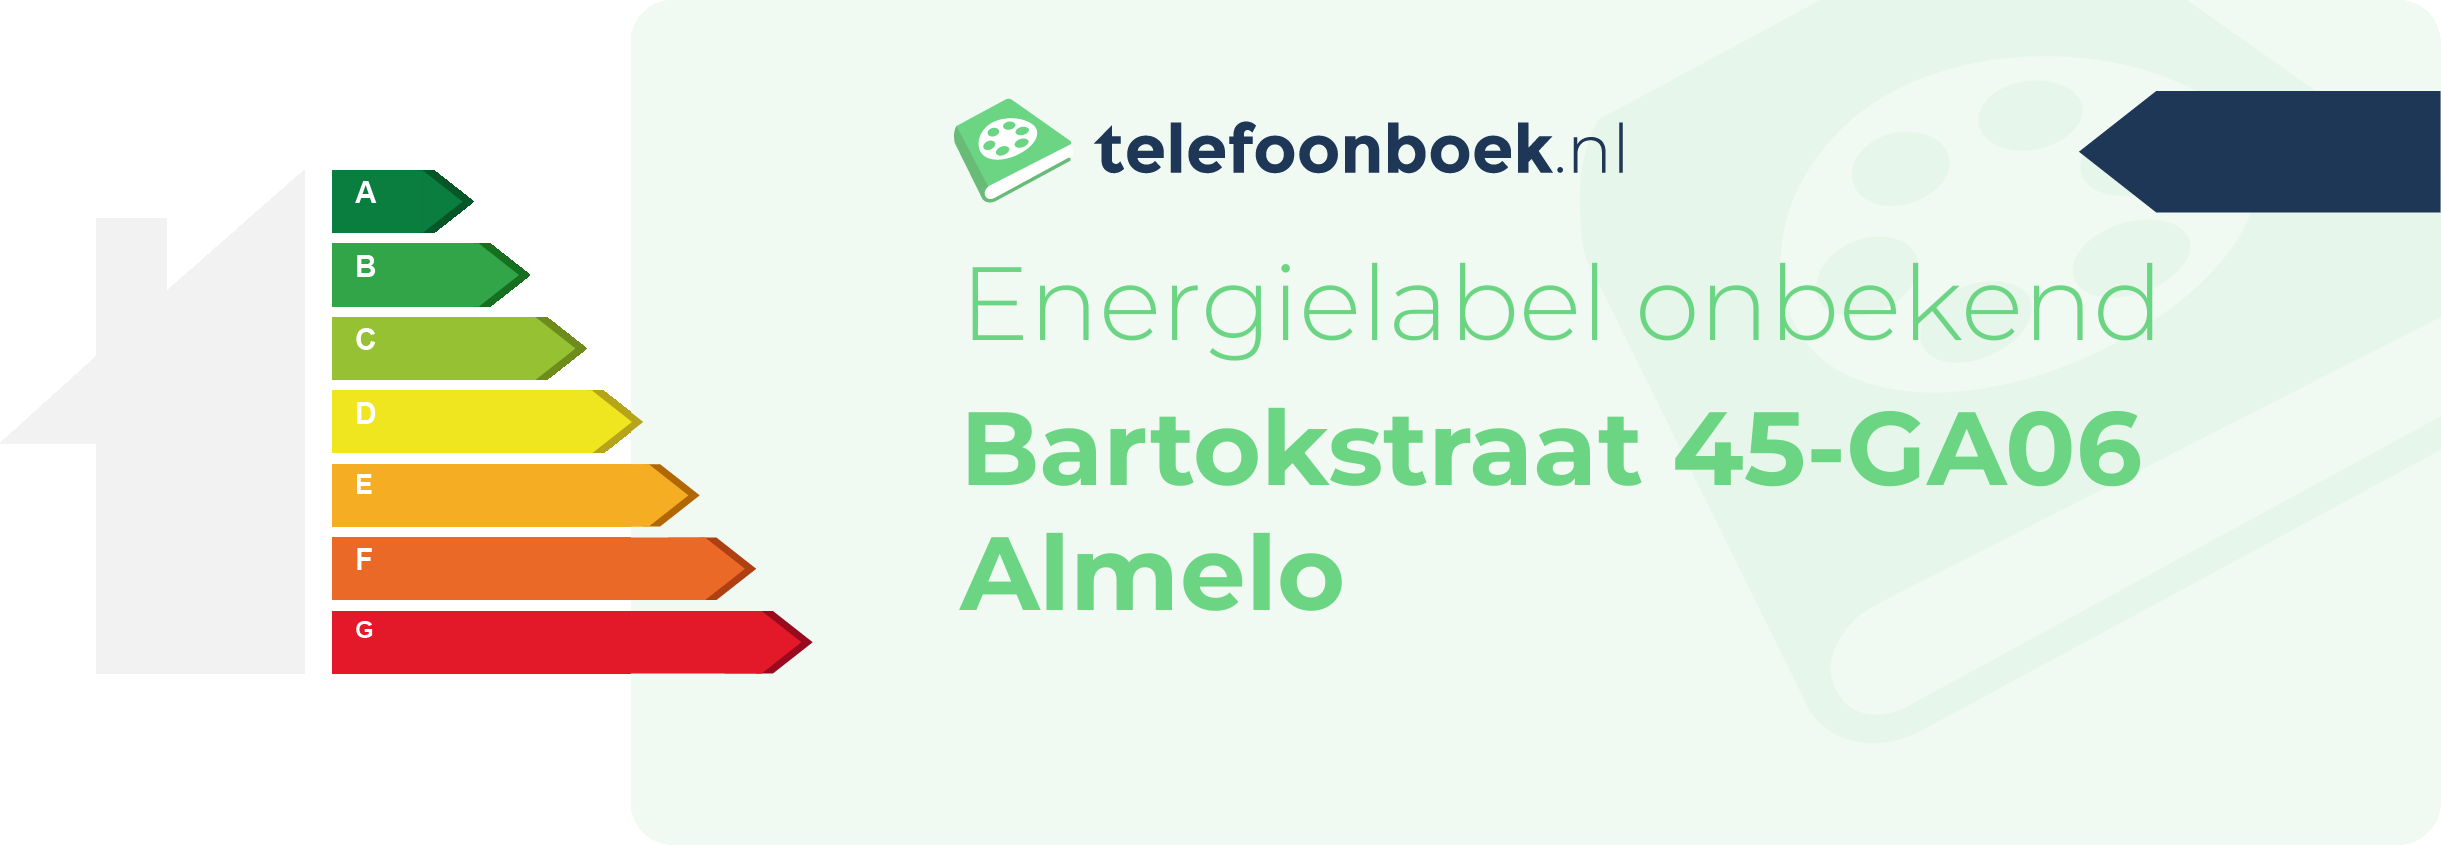 Energielabel Bartokstraat 45-GA06 Almelo